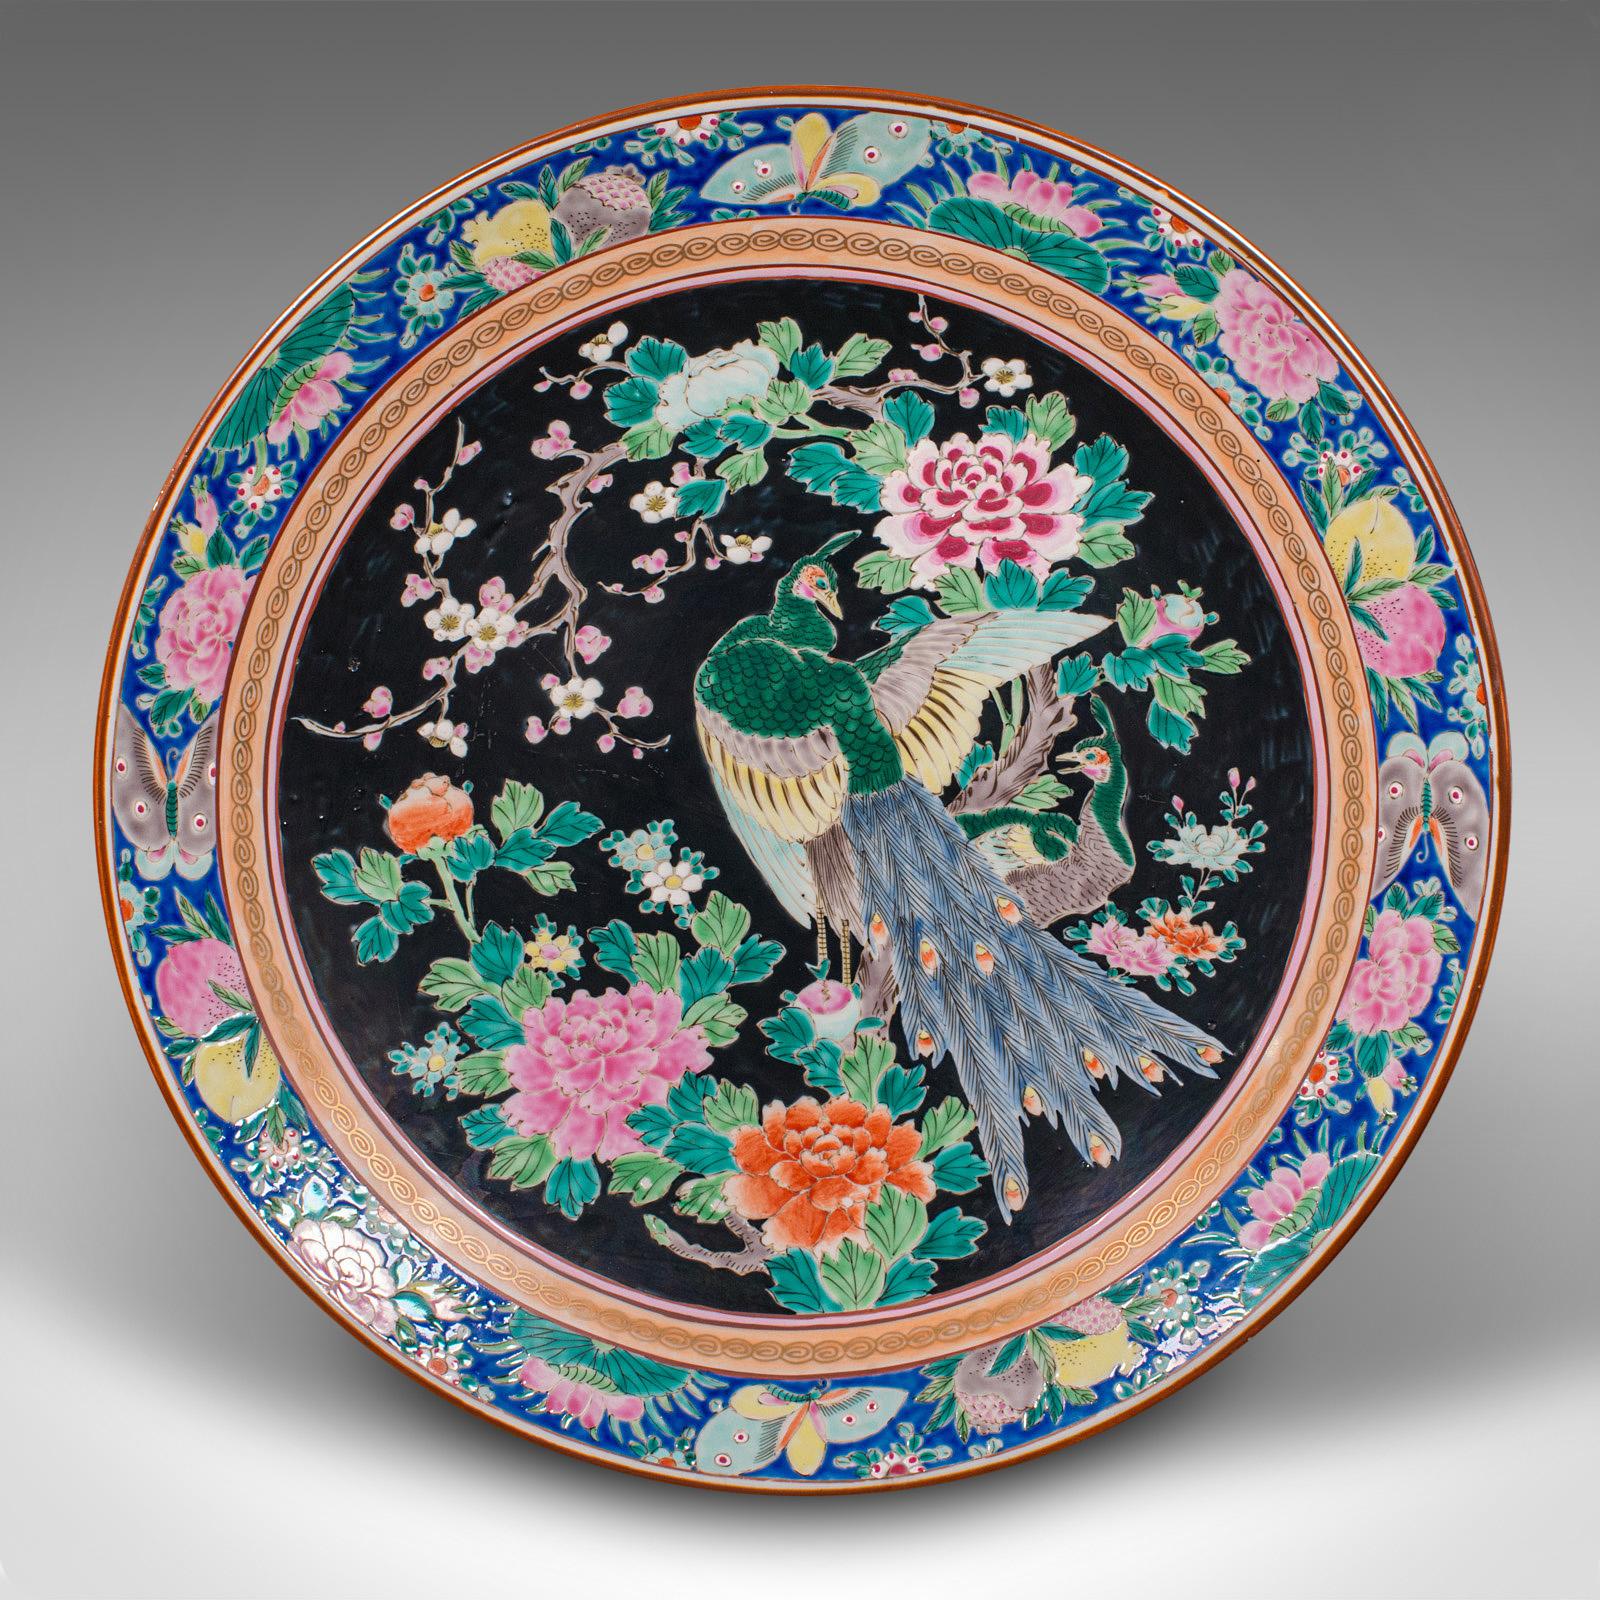 Il s'agit d'un grand chargeur décoratif vintage. Assiette japonaise en céramique, datant de la fin de la période Art déco, vers 1940.

Une couleur généreuse qui met en valeur cette assiette de taille généreuse.
Présente une patine d'ancienneté